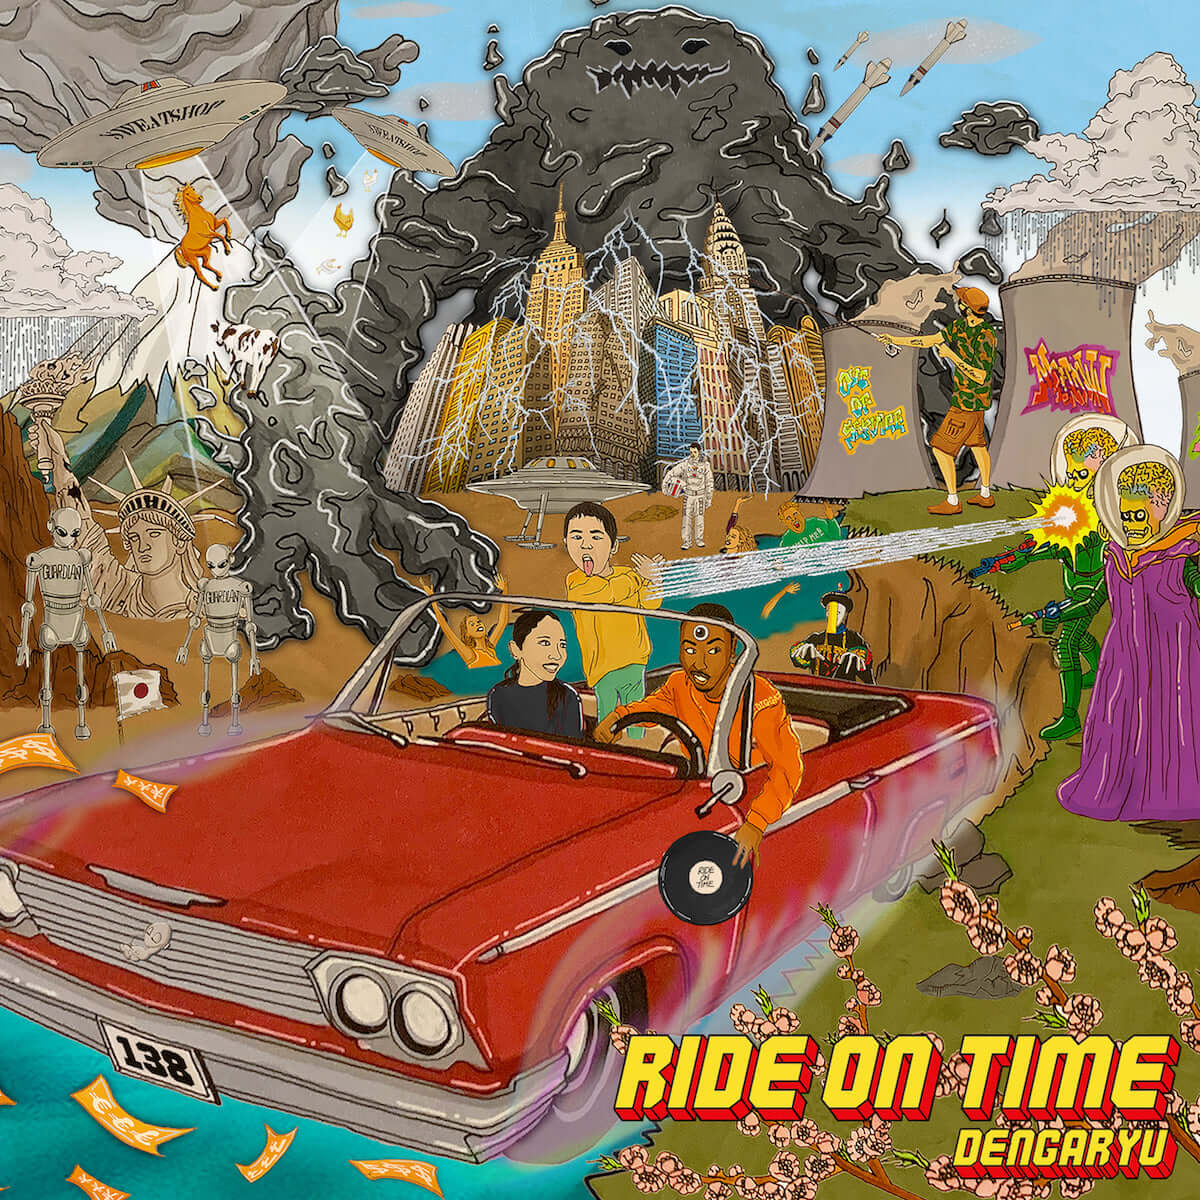 田我流、本日22:00にアルバム『Ride On Time』収録の「Changes」MVをYouTubeでプレミア公開 music190423_dengaryu_1-1200x1200